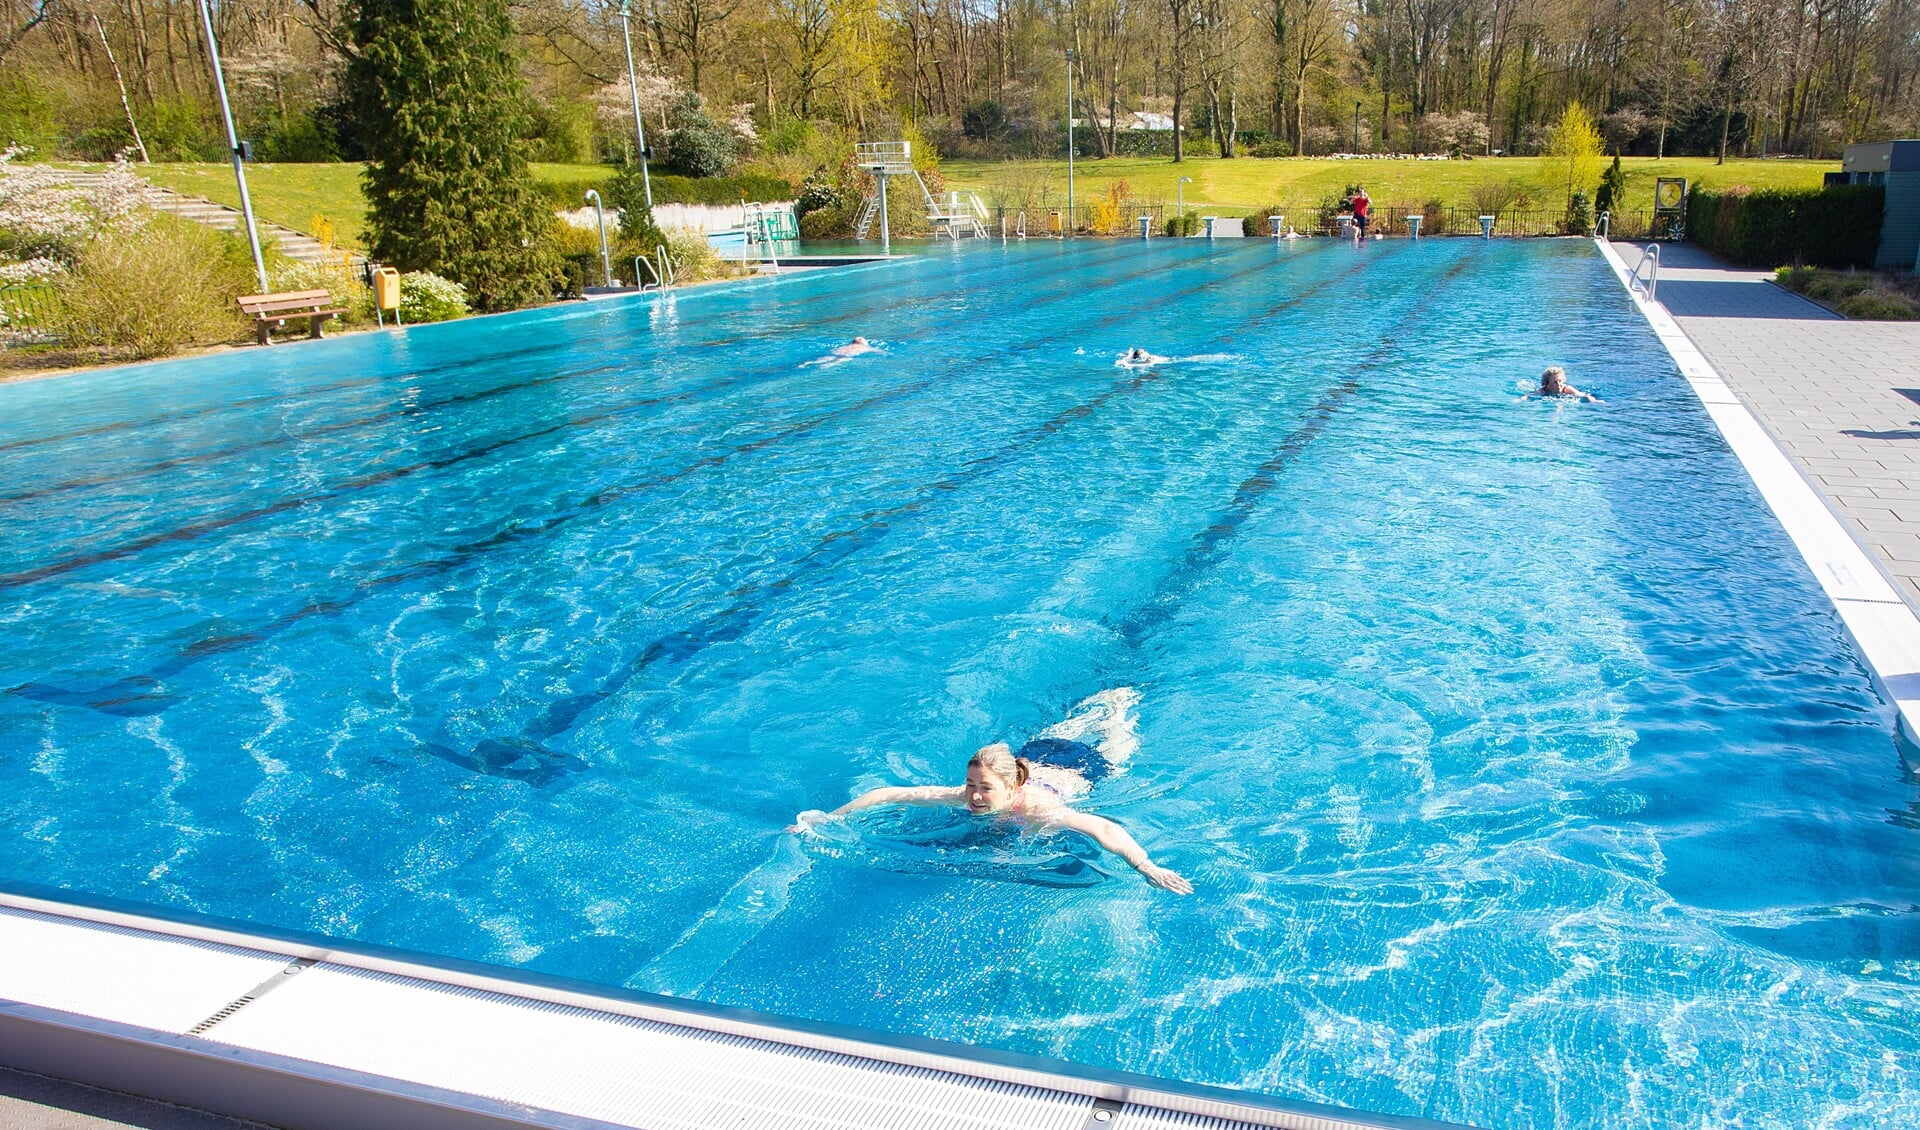 het zwembad blijft een aantal ochtenden langer open voor met name banenzwemmers.